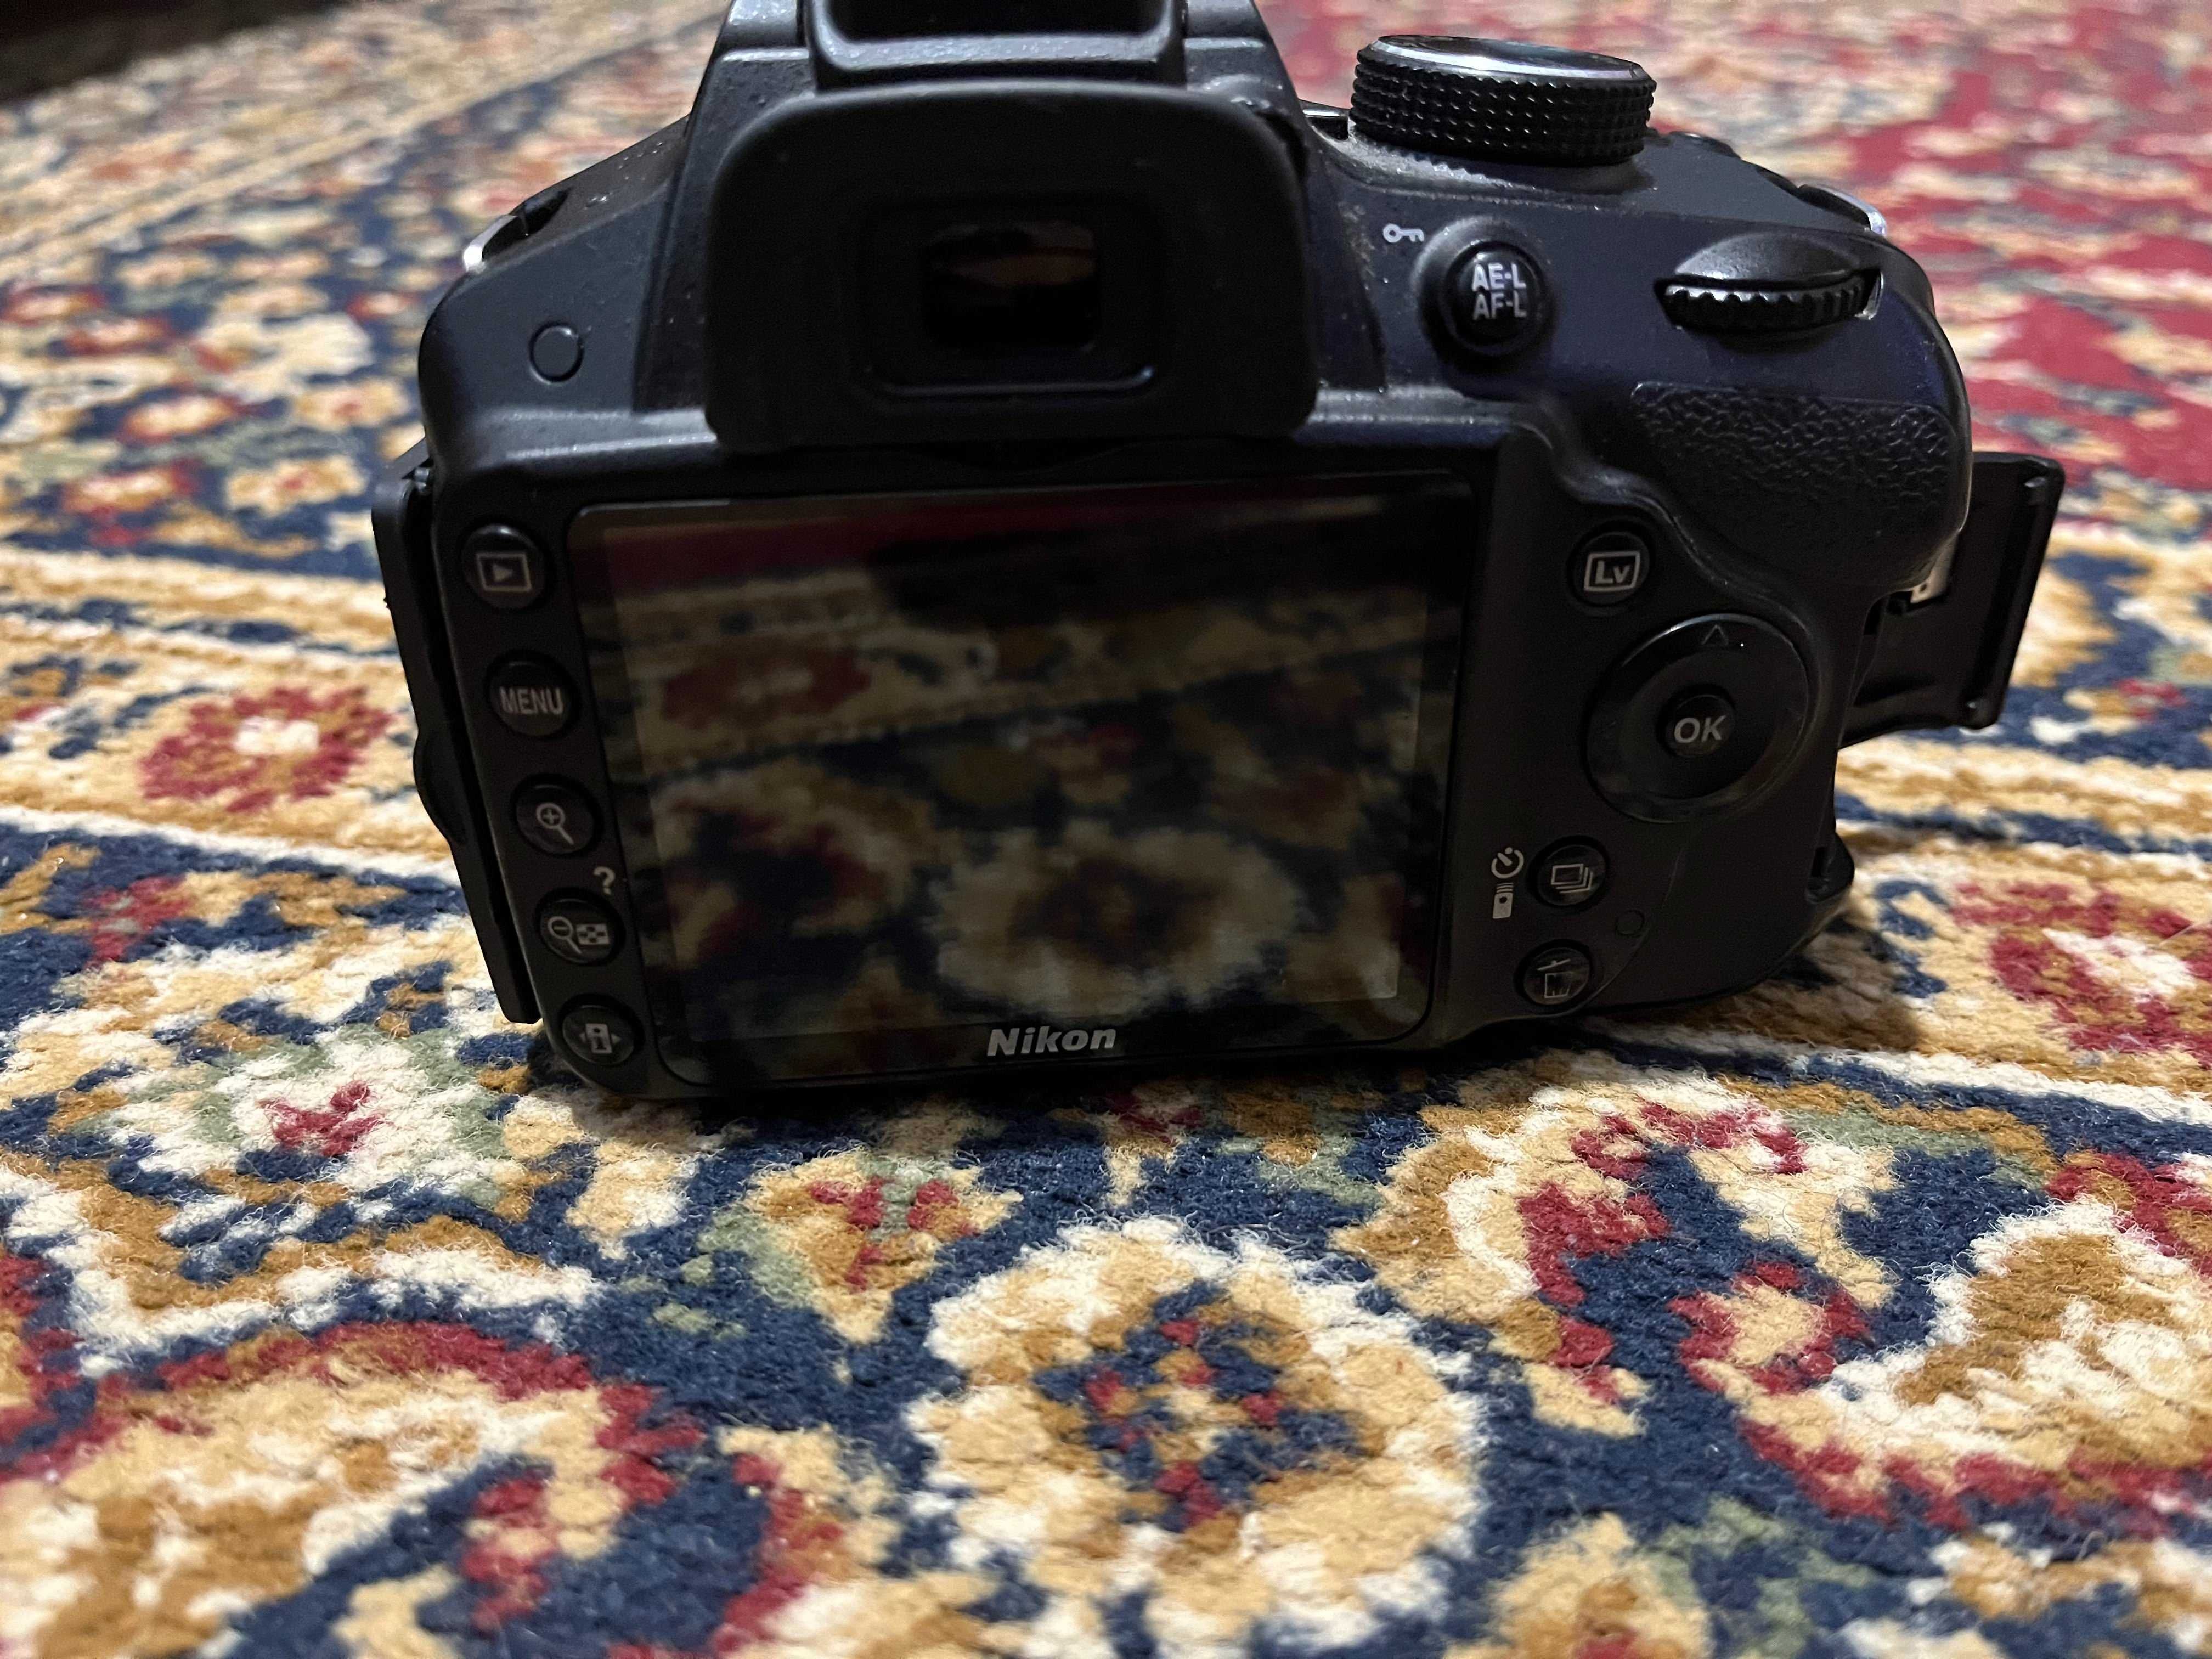 Nikon D3200+Obiectiv 18-55mm VR